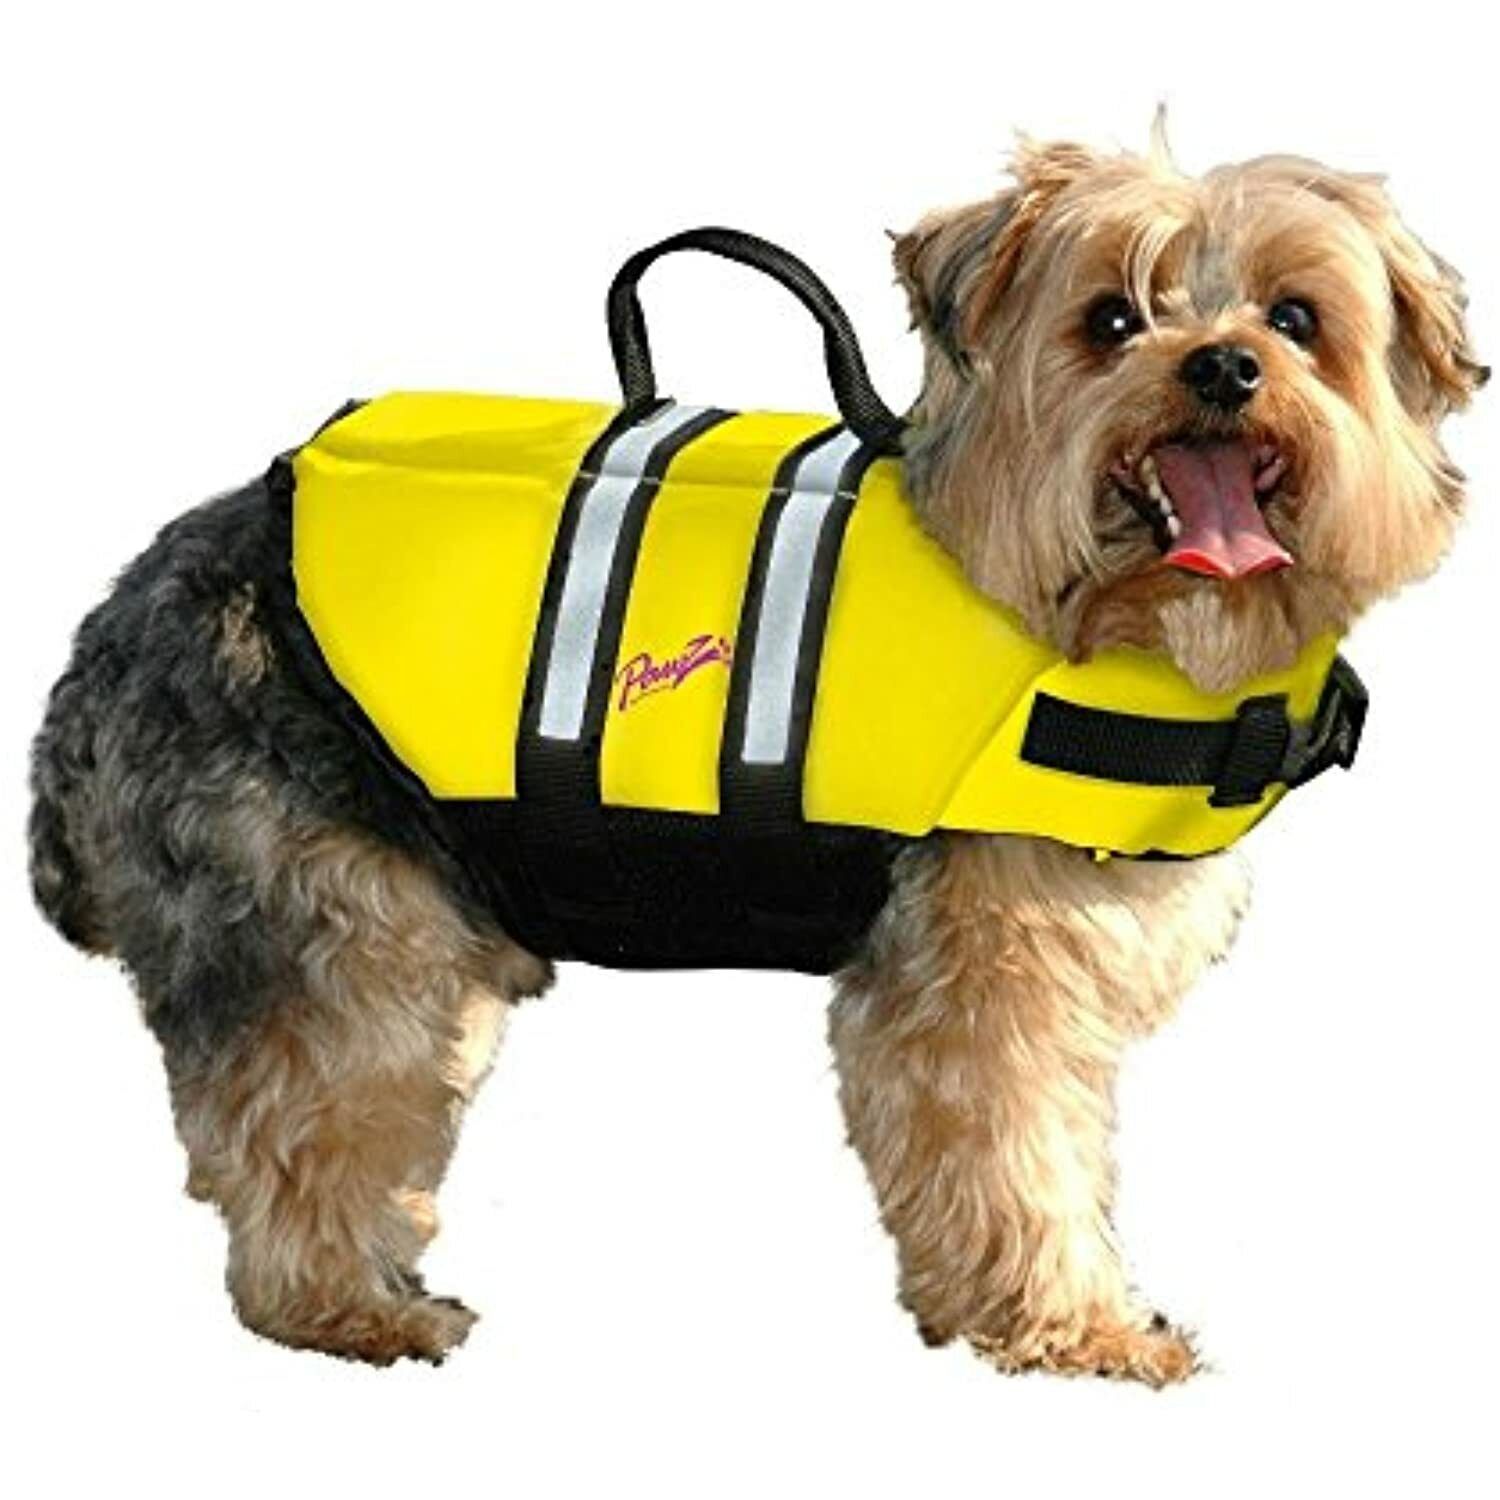 Pawz Pet Products Doggy Life Jacket, Yellow, X-Large